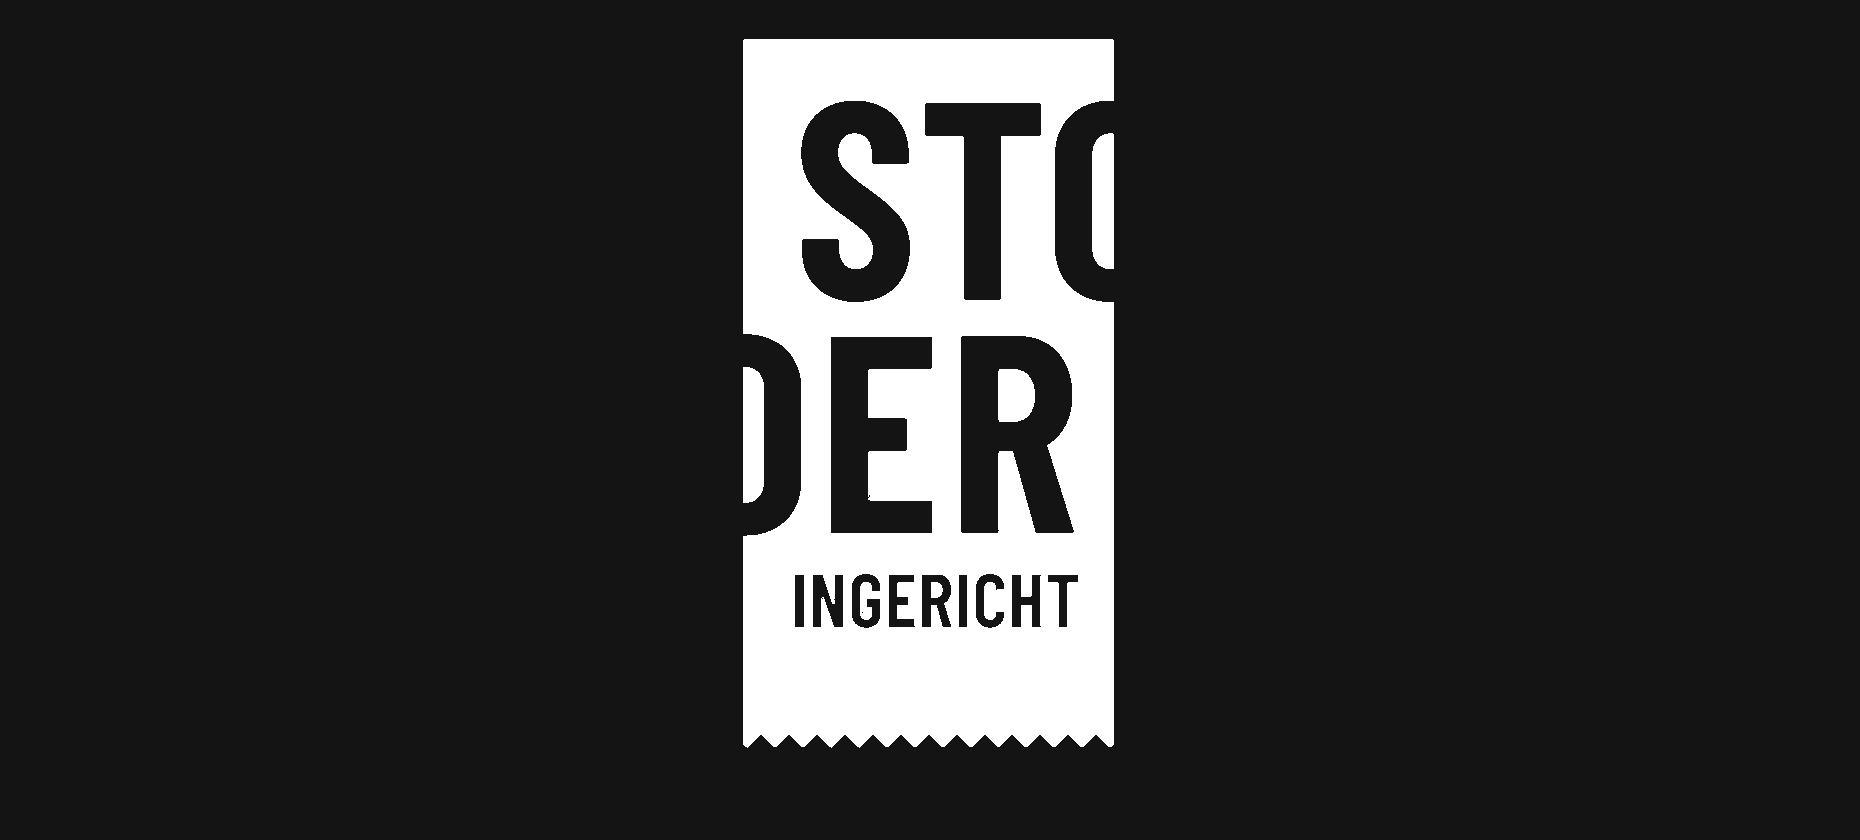 Slider for Stoeringericht.nl